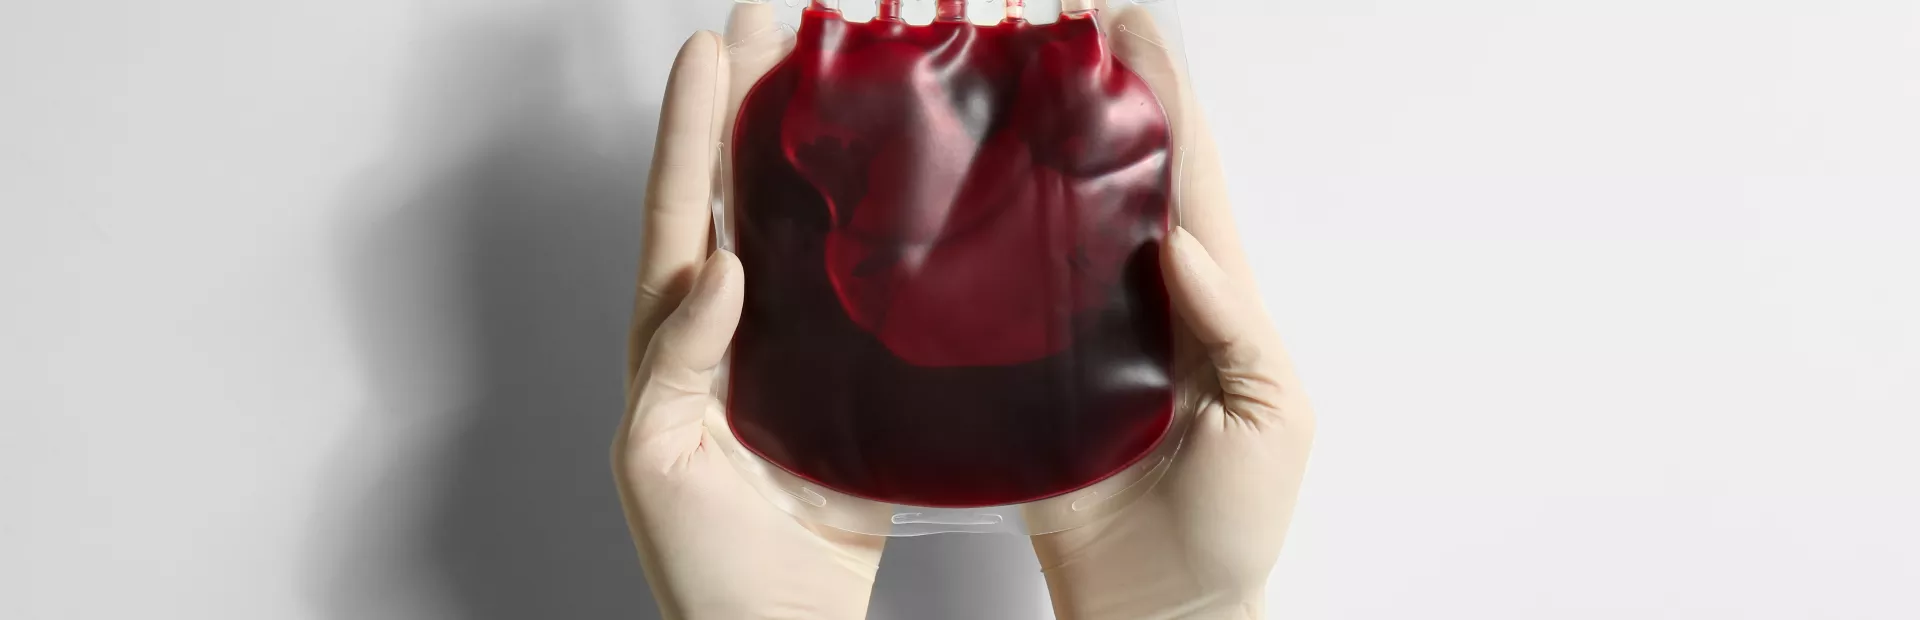 Bolsa para transfusión de sangre